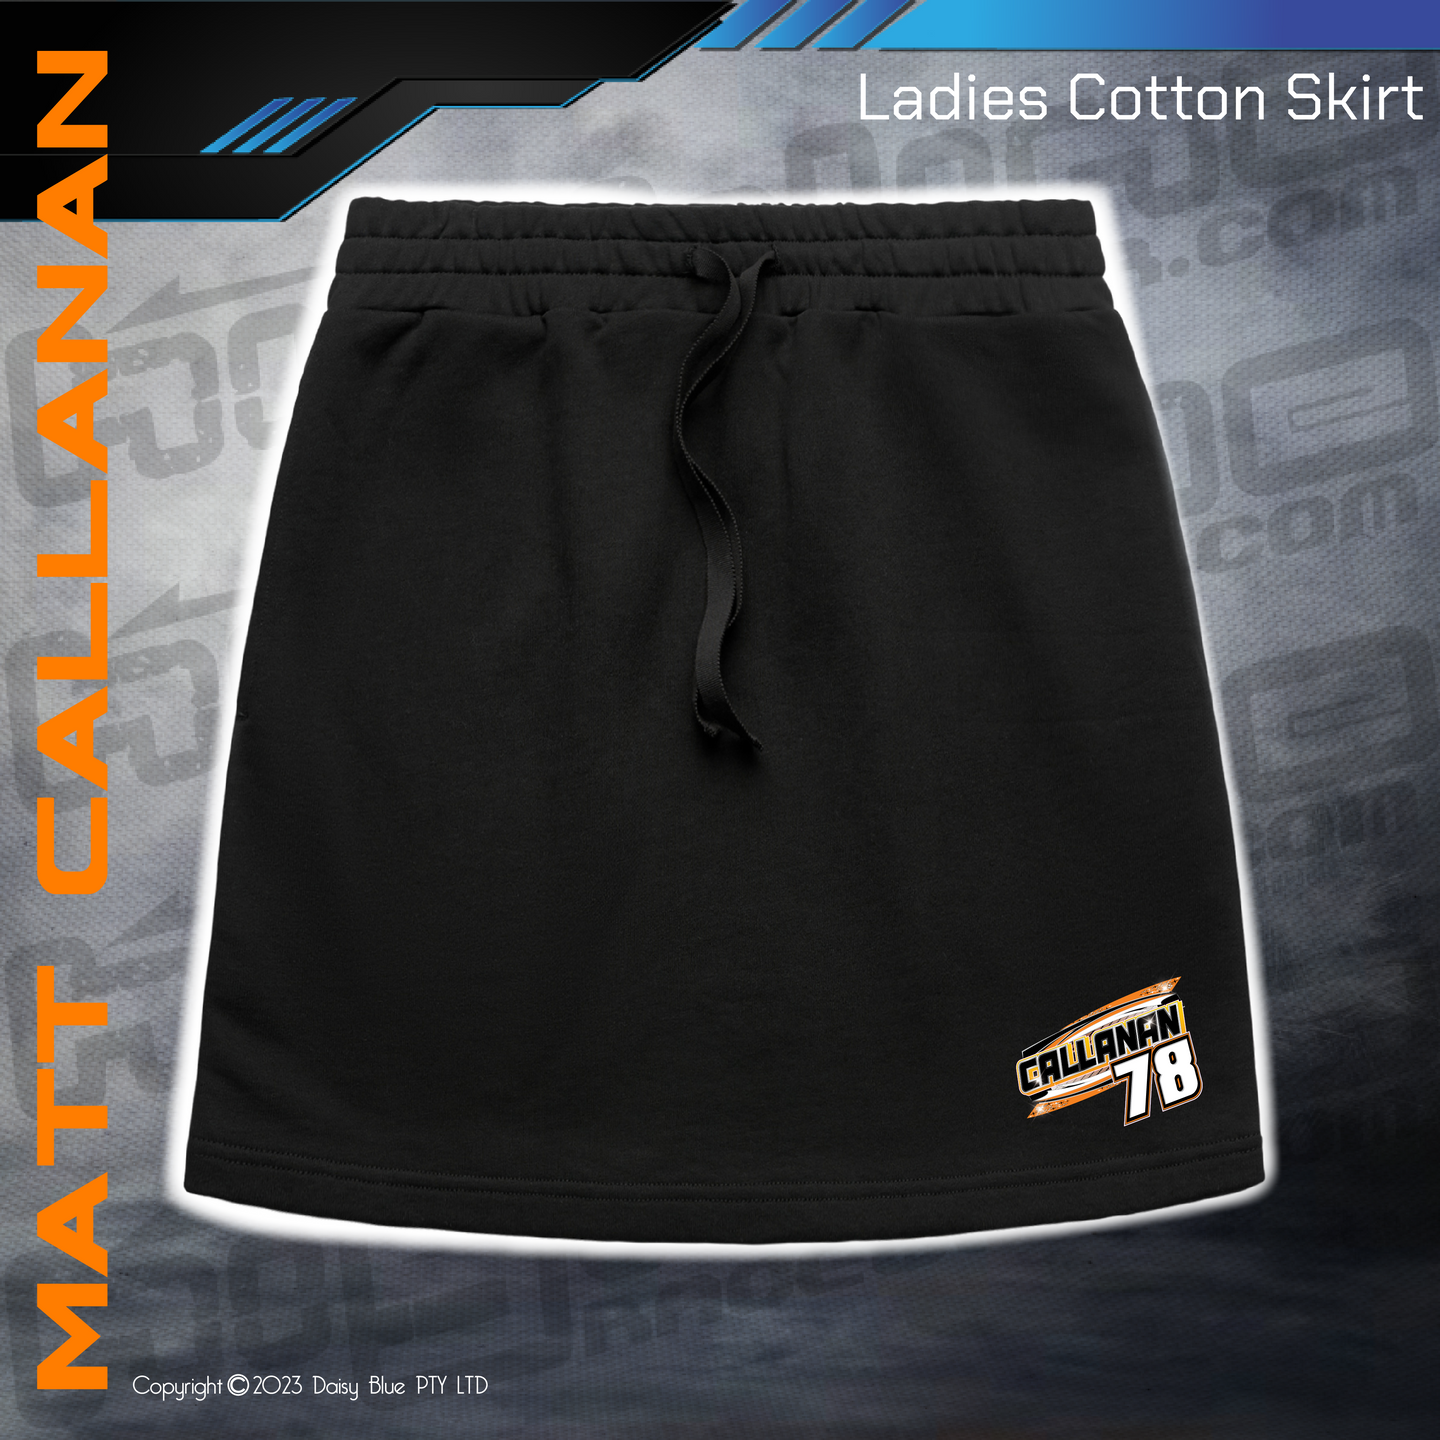 Cotton Skirt - Matthew Callanan